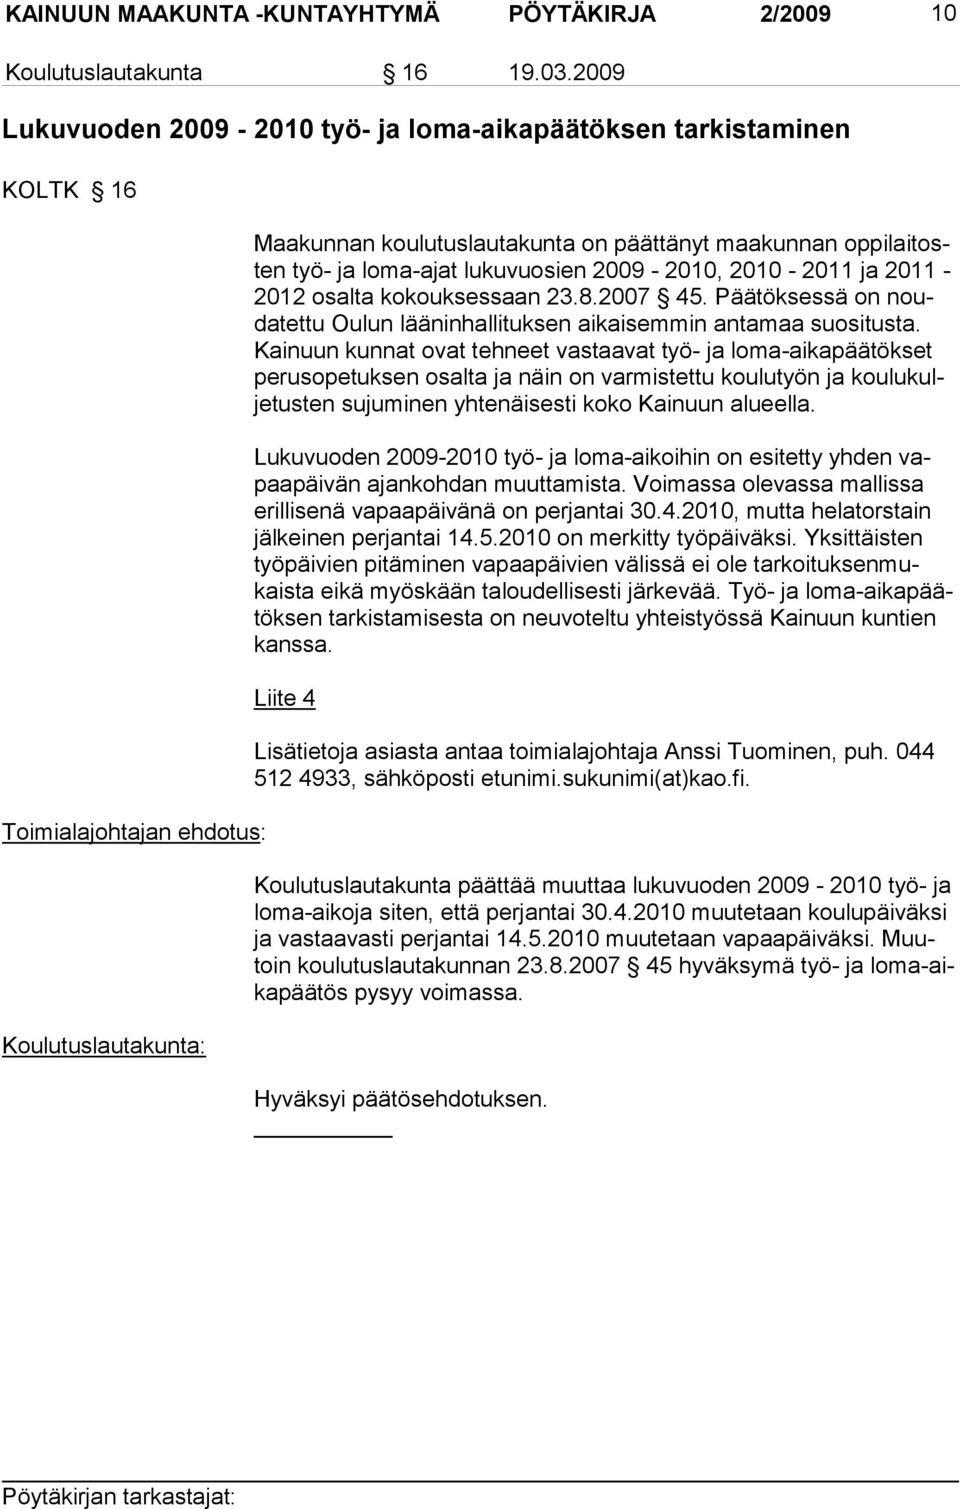 2011-2012 osalta ko kouksessaan 23.8.2007 45. Päätöksessä on noudatettu Oulun lääninhallituksen aikai semmin anta maa suositusta.